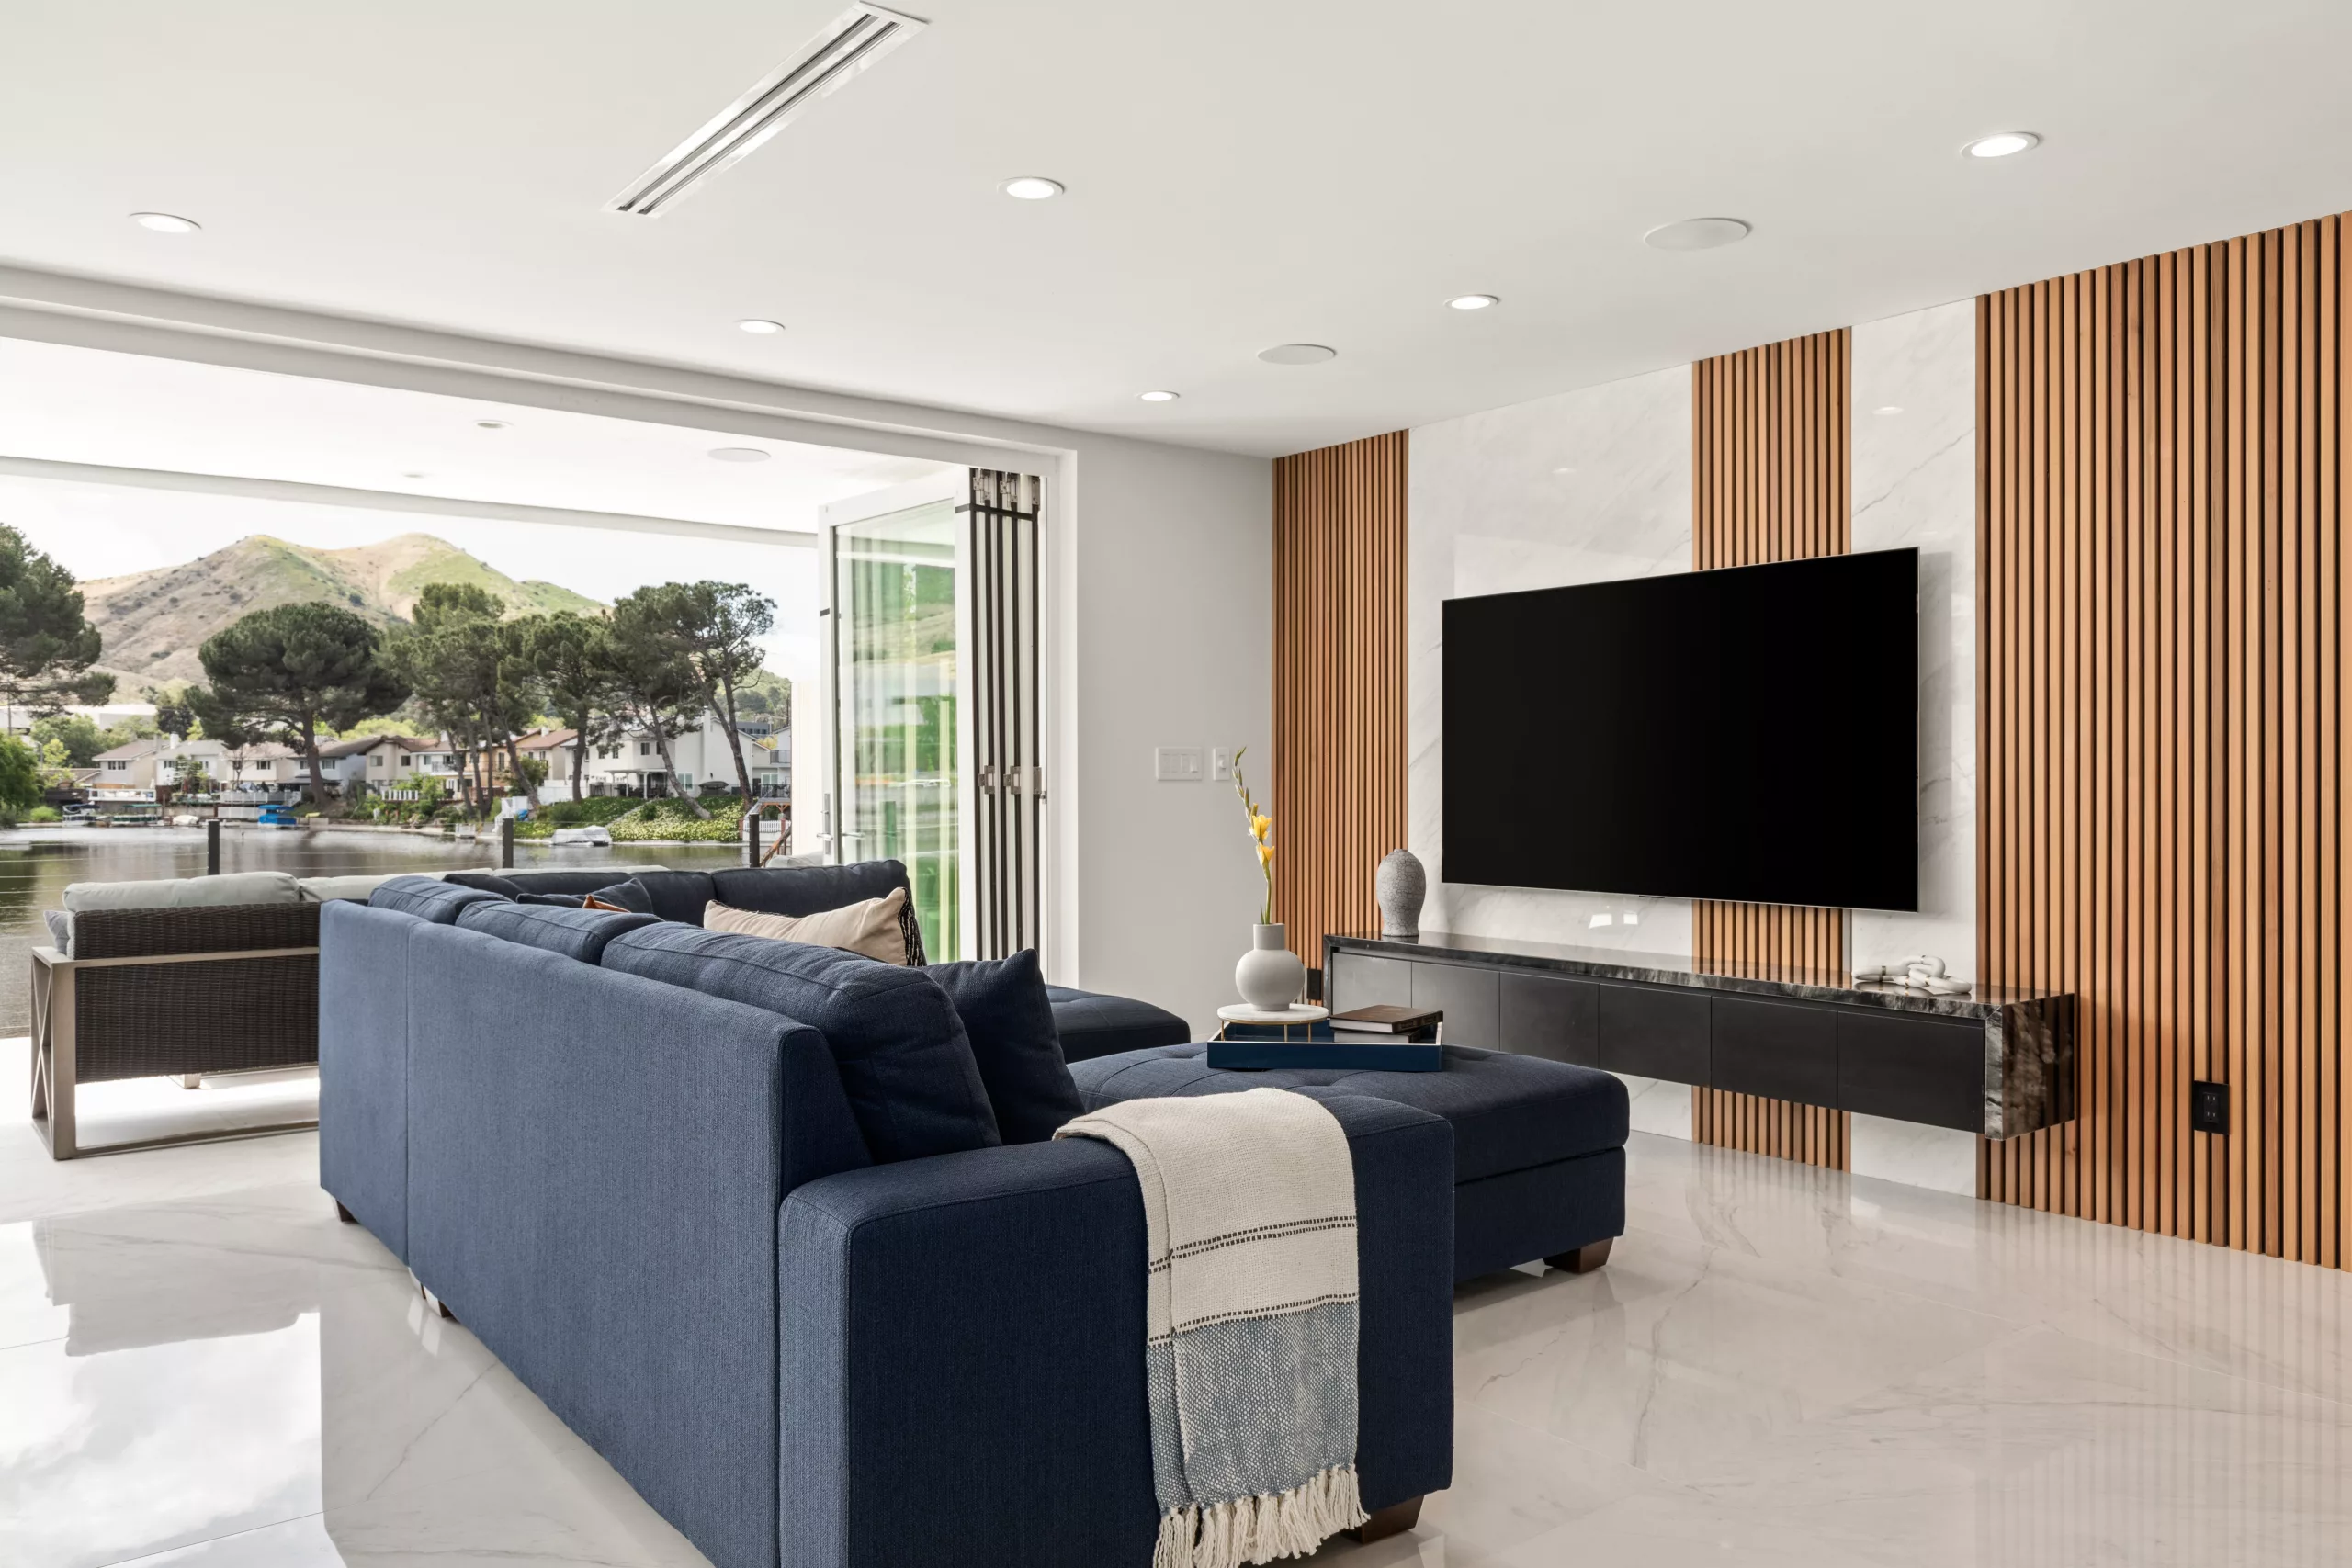 Agoura Hills, CA Home Renovation Living Room Design